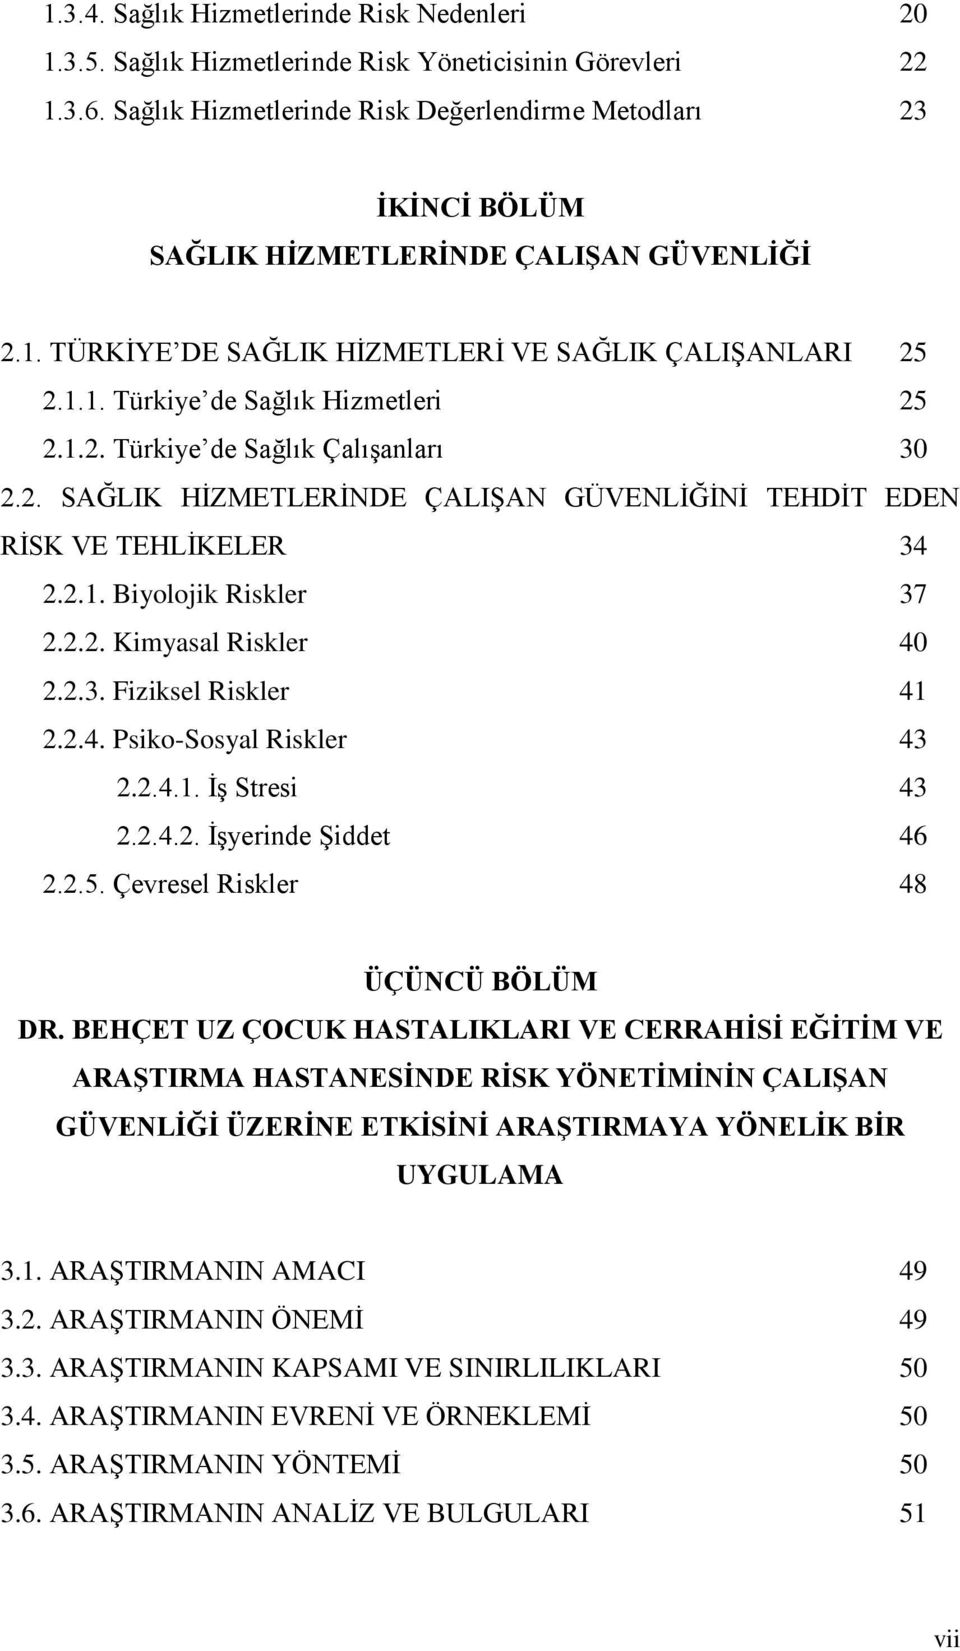 1.2. Türkiye de Sağlık Çalışanları 30 2.2. SAĞLIK HİZMETLERİNDE ÇALIŞAN GÜVENLİĞİNİ TEHDİT EDEN RİSK VE TEHLİKELER 34 2.2.1. Biyolojik Riskler 37 2.2.2. Kimyasal Riskler 40 2.2.3. Fiziksel Riskler 41 2.